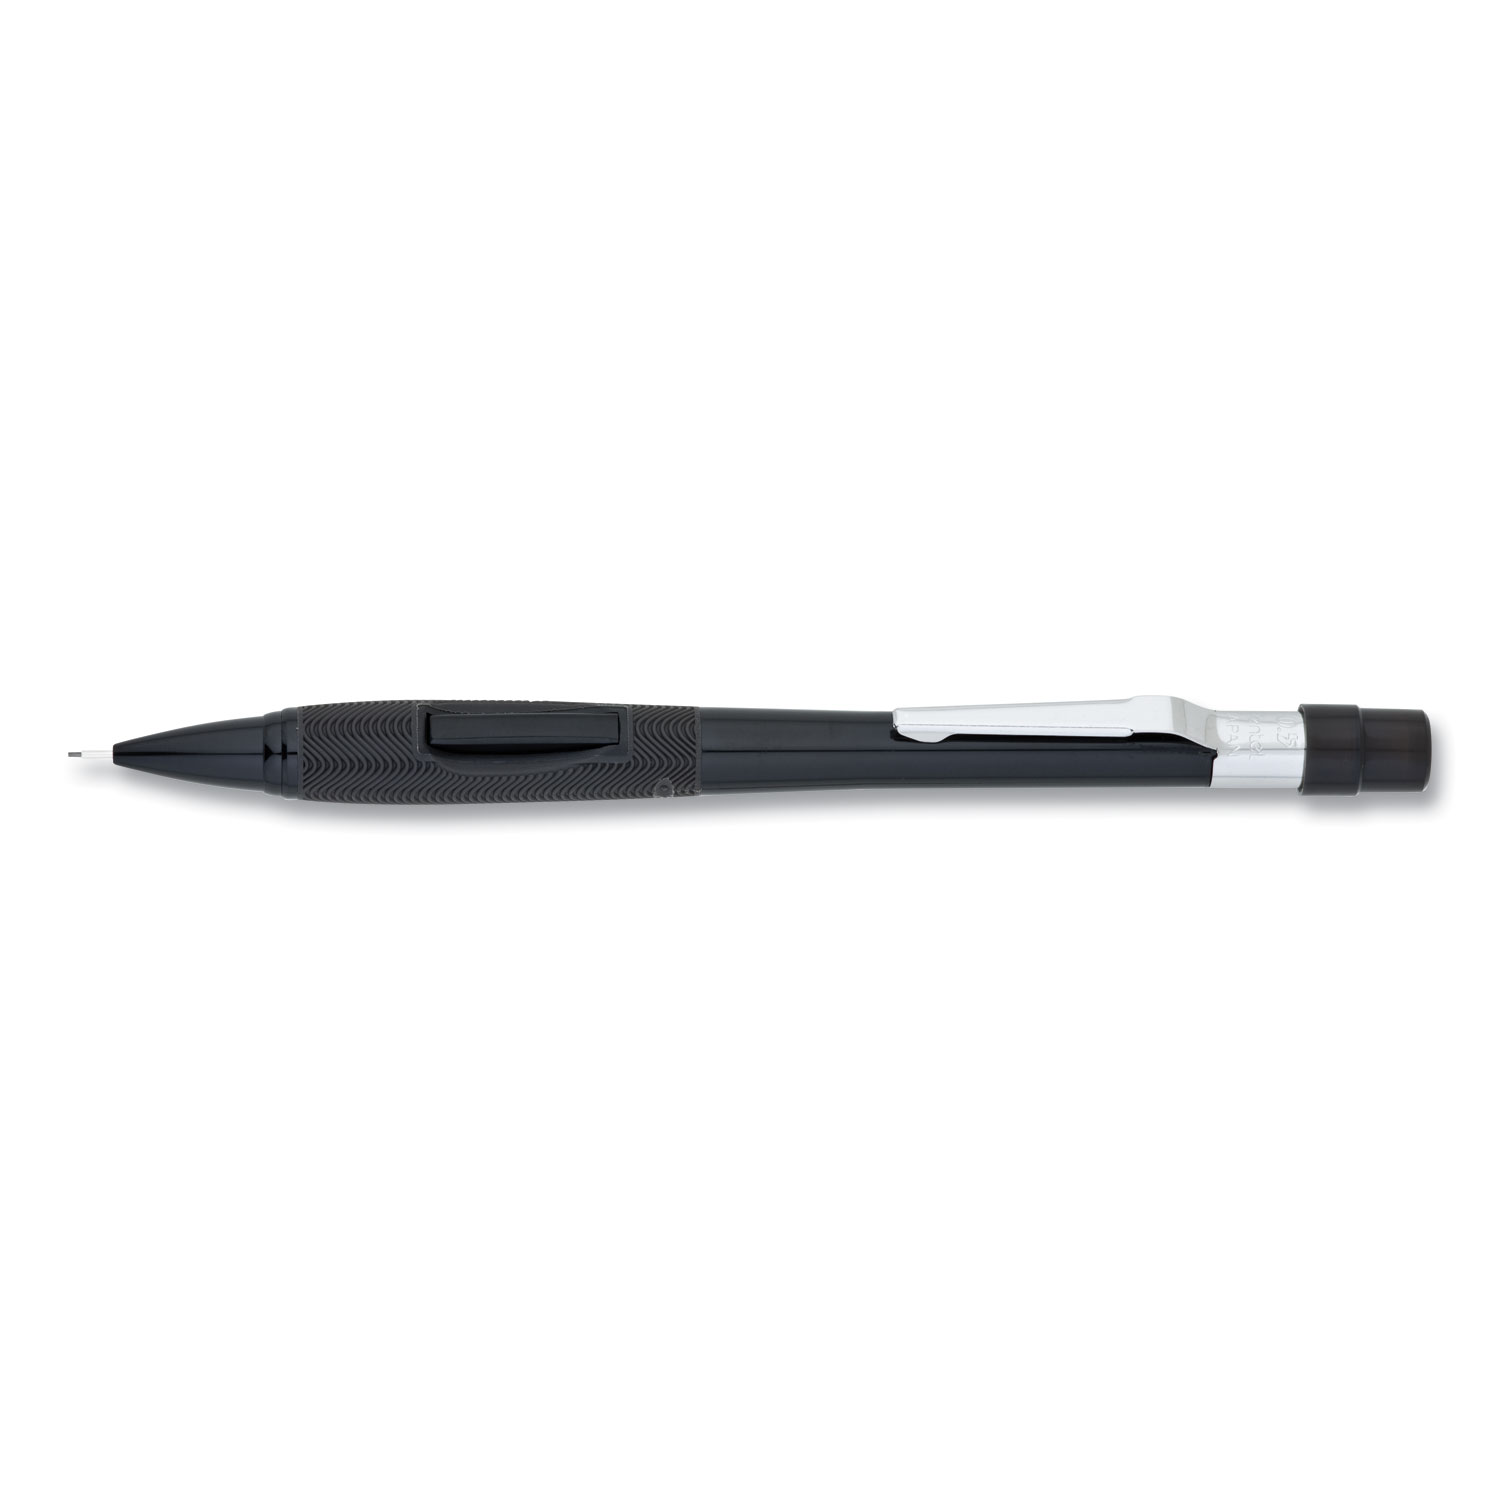  Pentel PD345A Quicker Clicker Mechanical Pencil, 0.5 mm, HB (#2.5), Black Lead, Black Barrel (PENPD345A) 